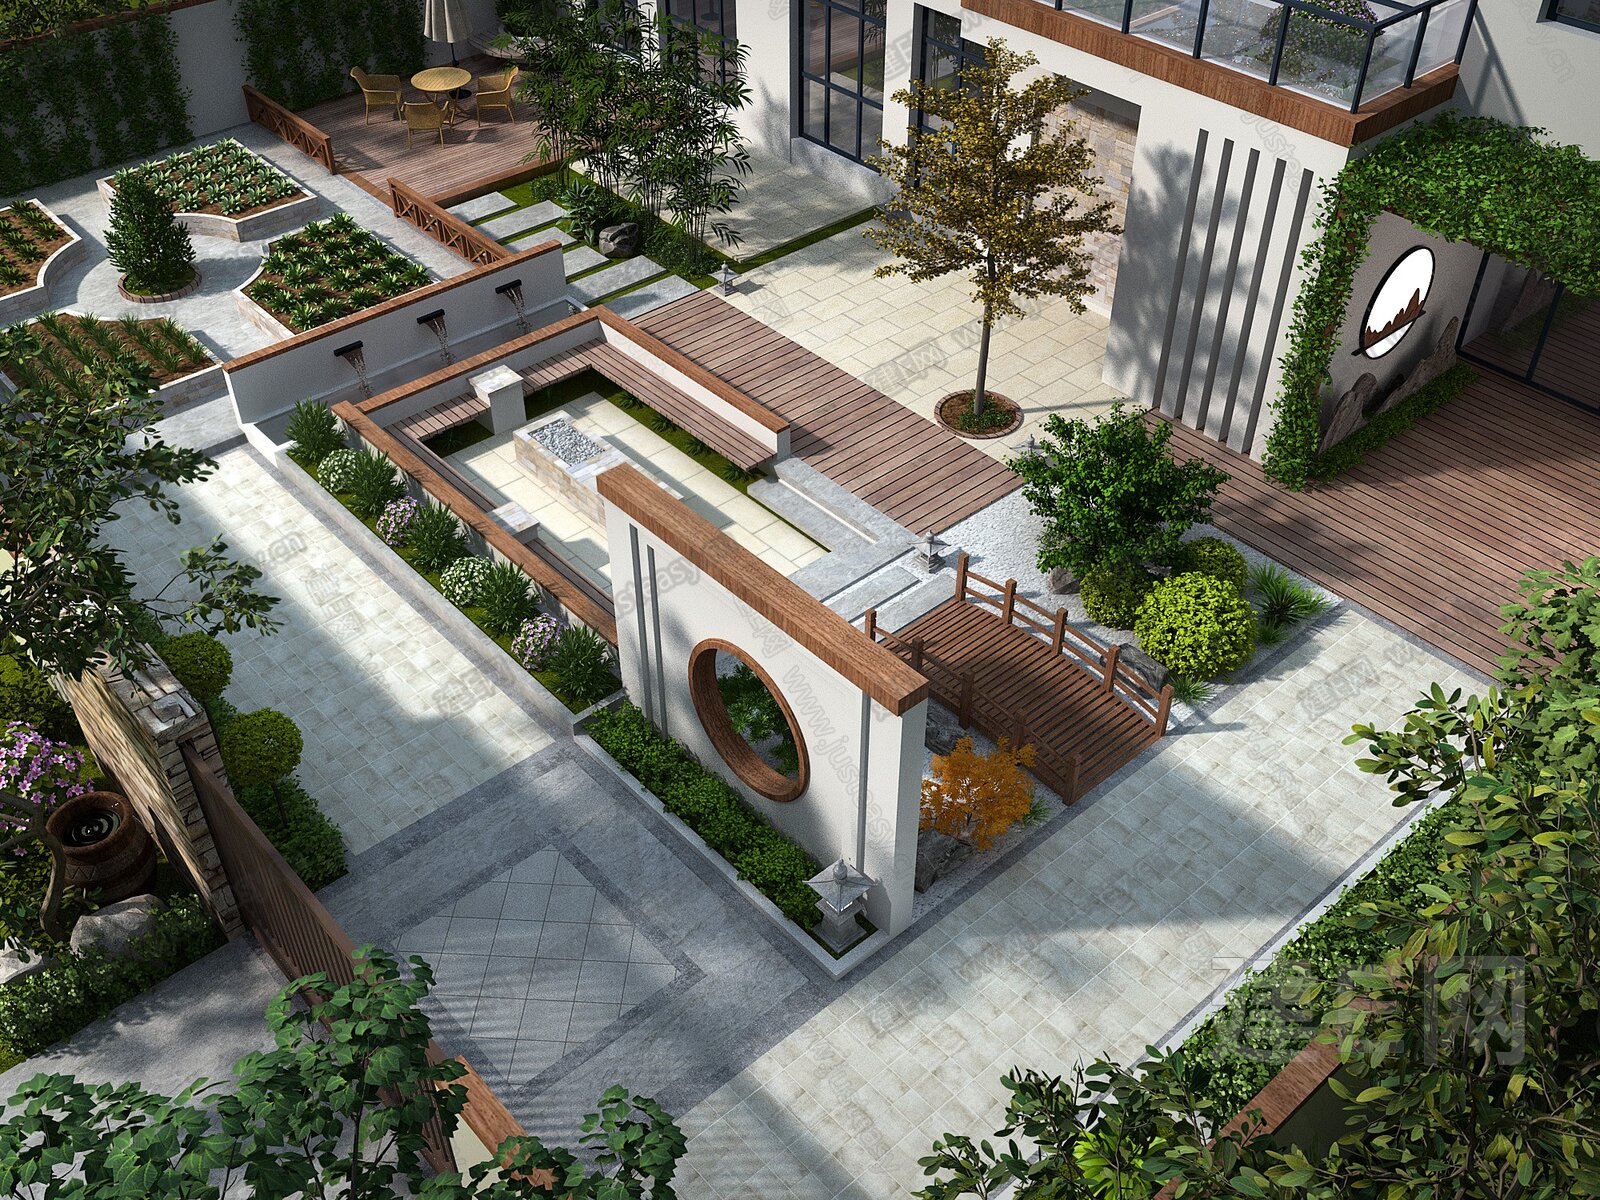 新中式建筑庭院景观-3D模型-模匠网,3D模型下载,免费模型下载,国外模型下载